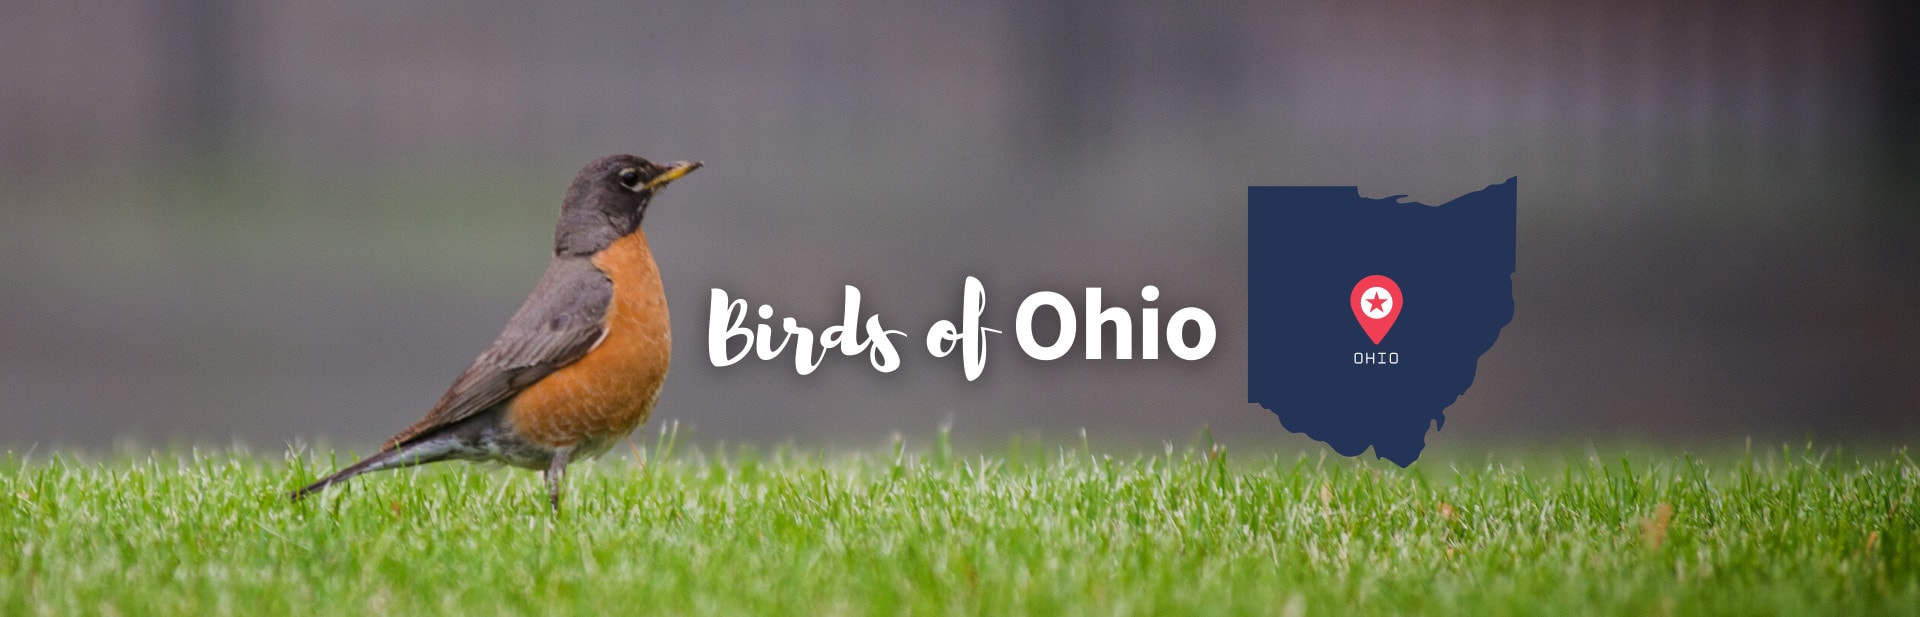 Birds of Ohio: Top 40 Species Found in Your Backyard